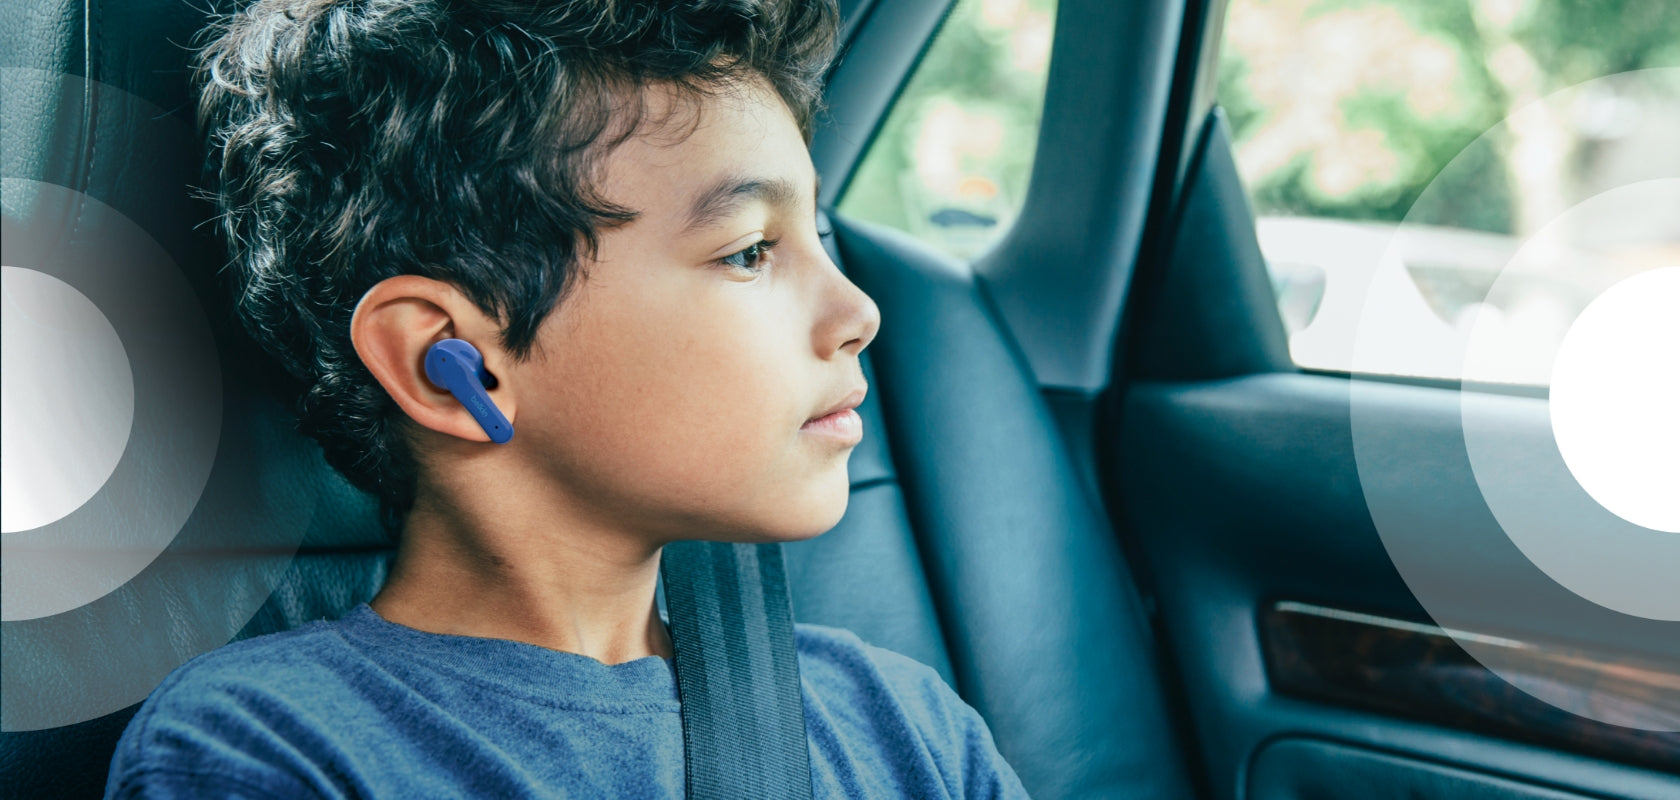 Belkin SOUNDFORM NANO True Wireless Earbuds for kids